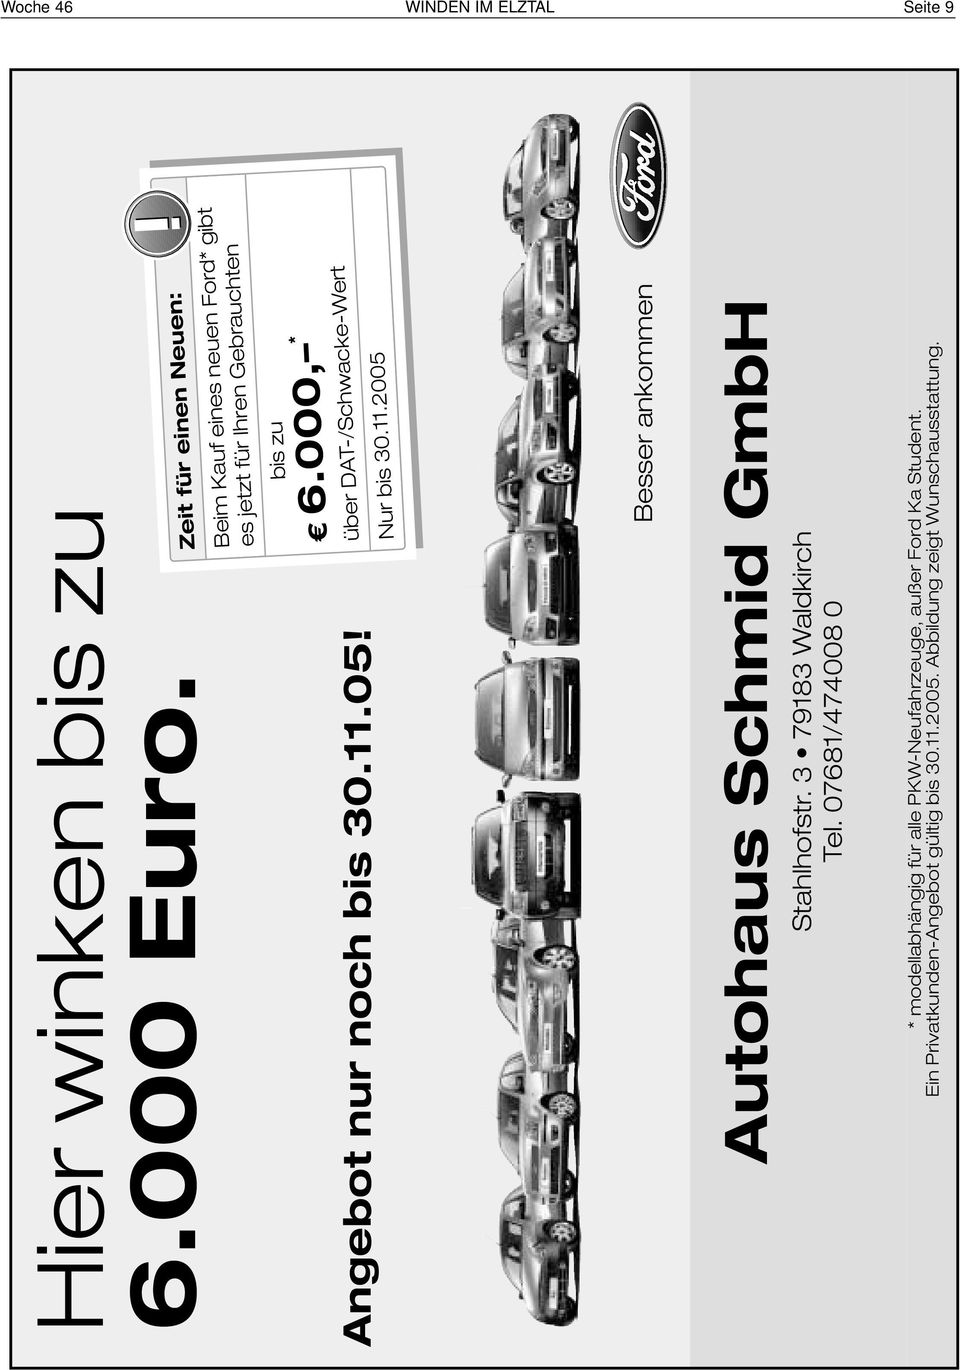 Angebot nur noch bis 30.11.05! Besser ankommen Autohaus Schmid GmbH Stahlhofstr. 3 79183 Waldkirch Tel.